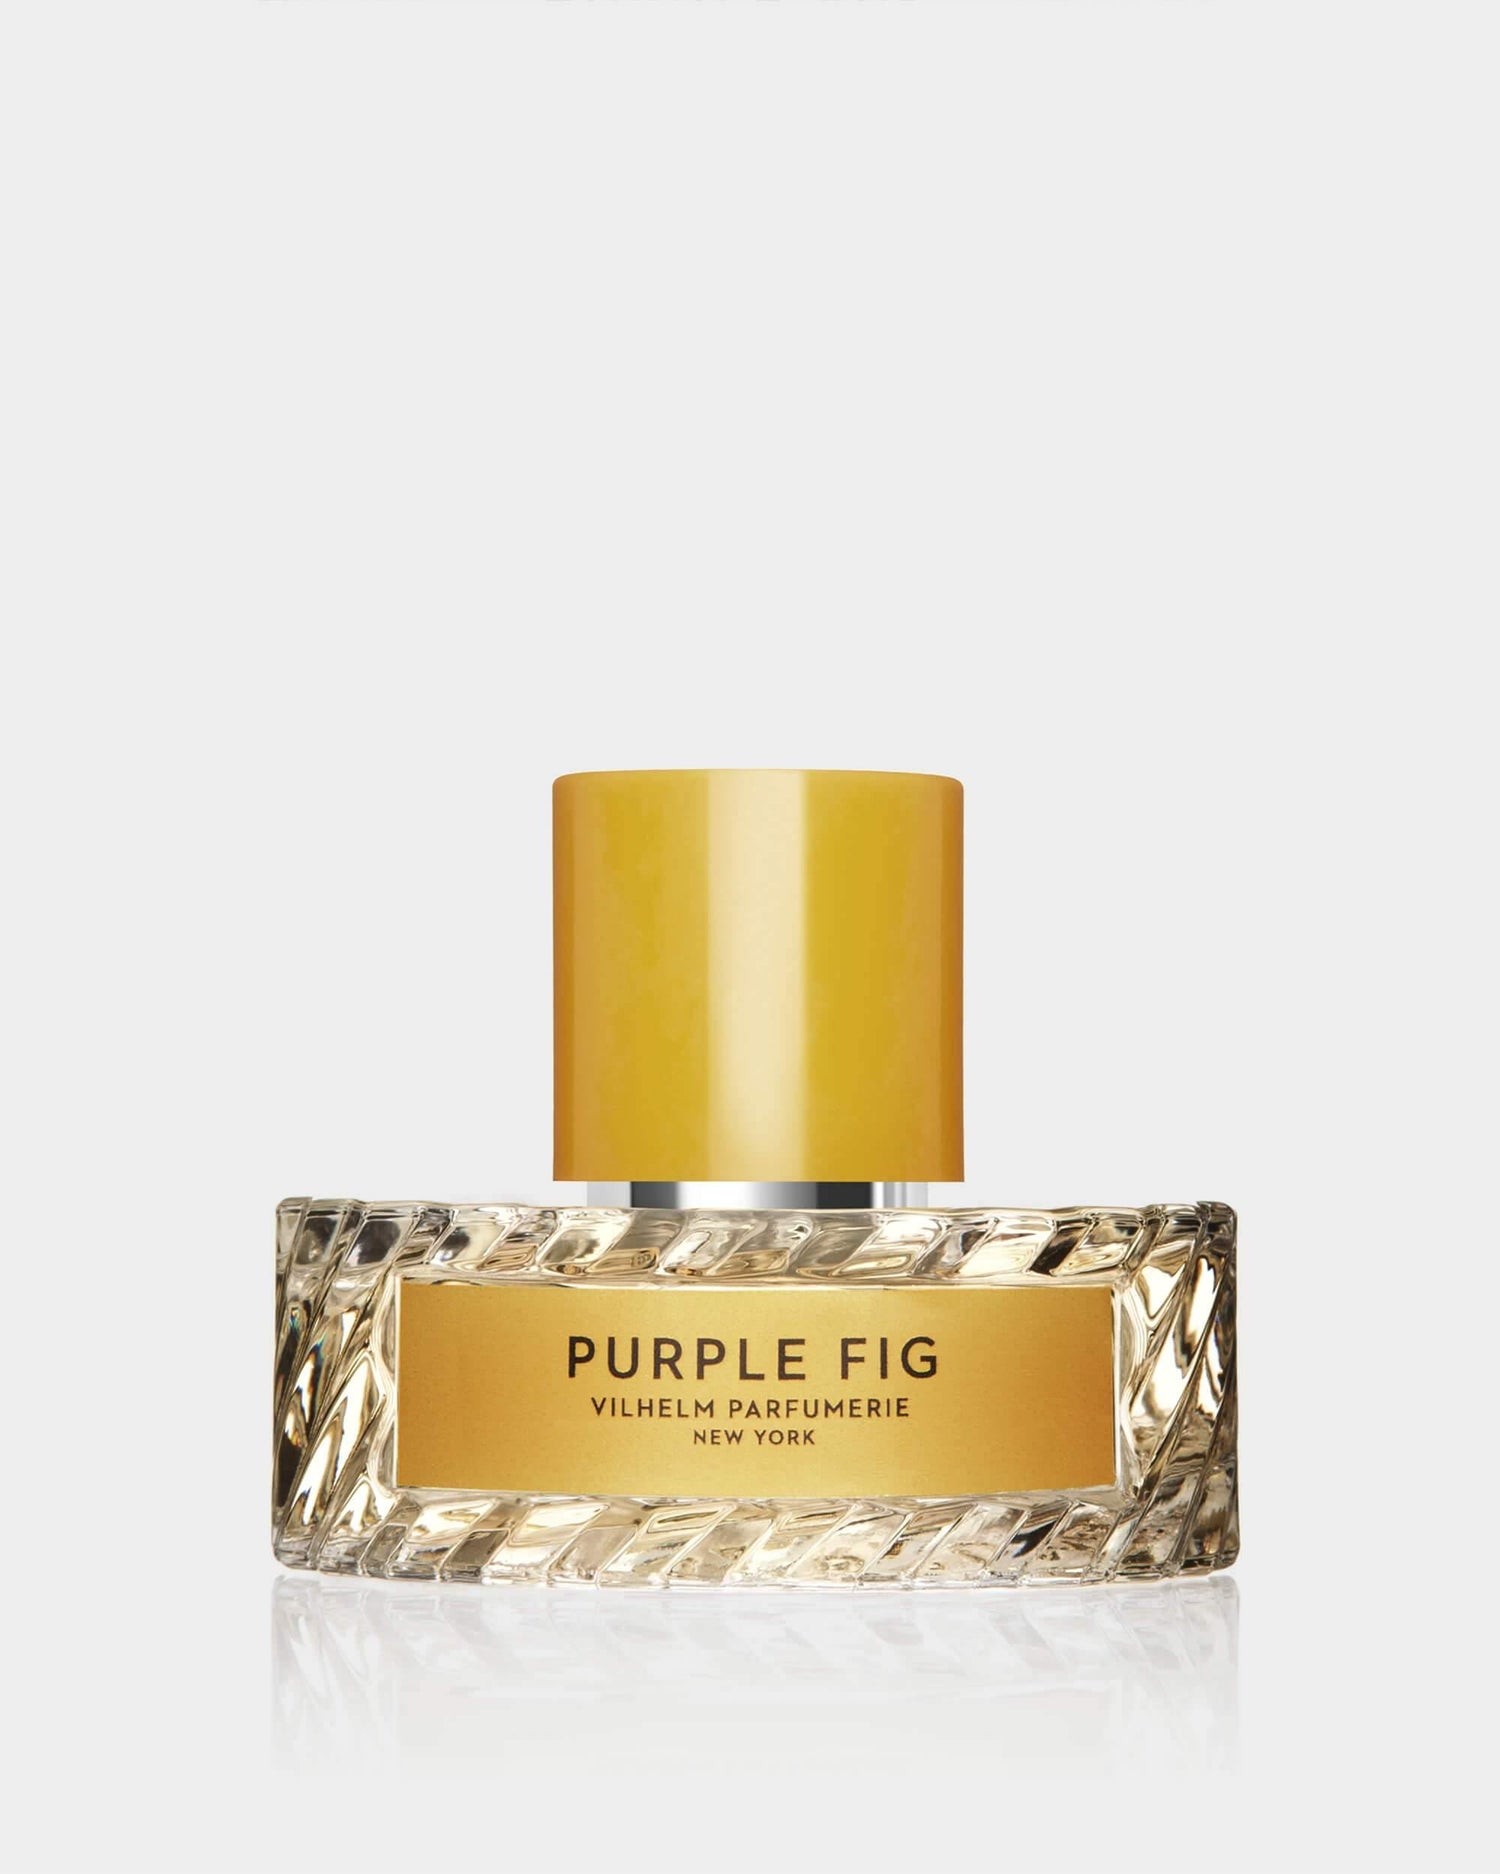 PURPLE FIG - Vilhelm Parfumerie